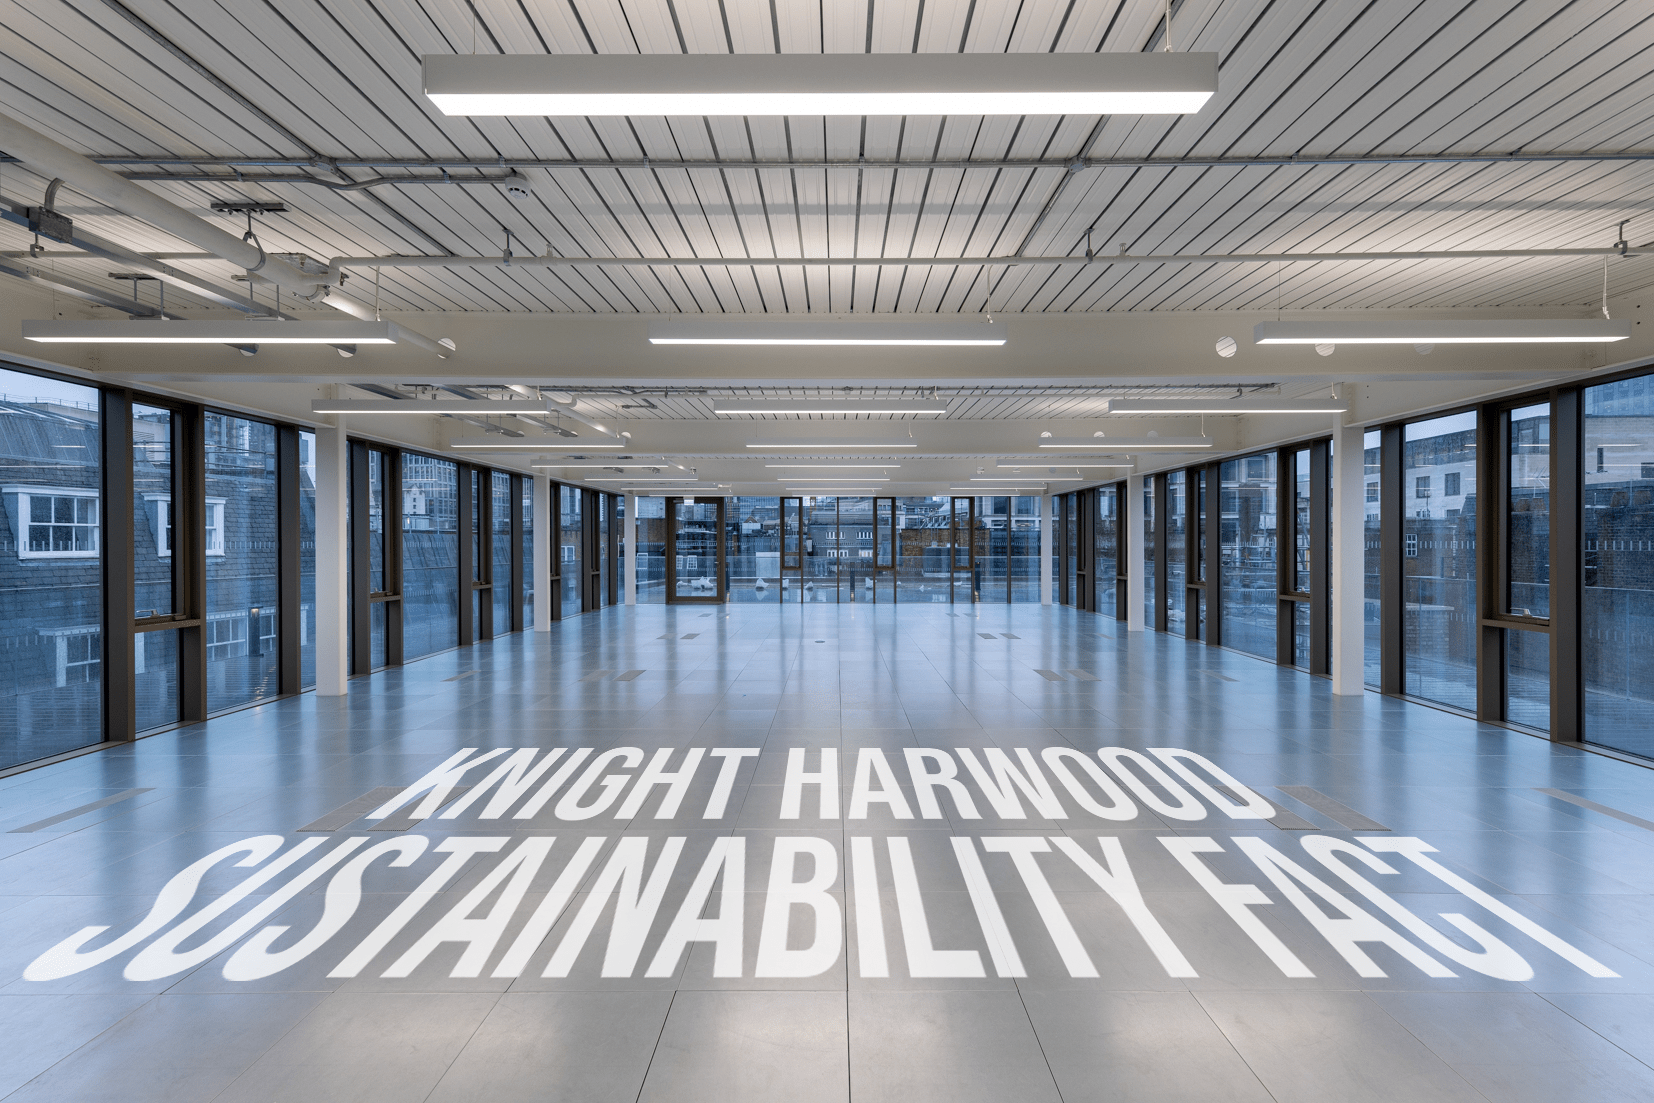 Knight Harwood Sustainability Fact